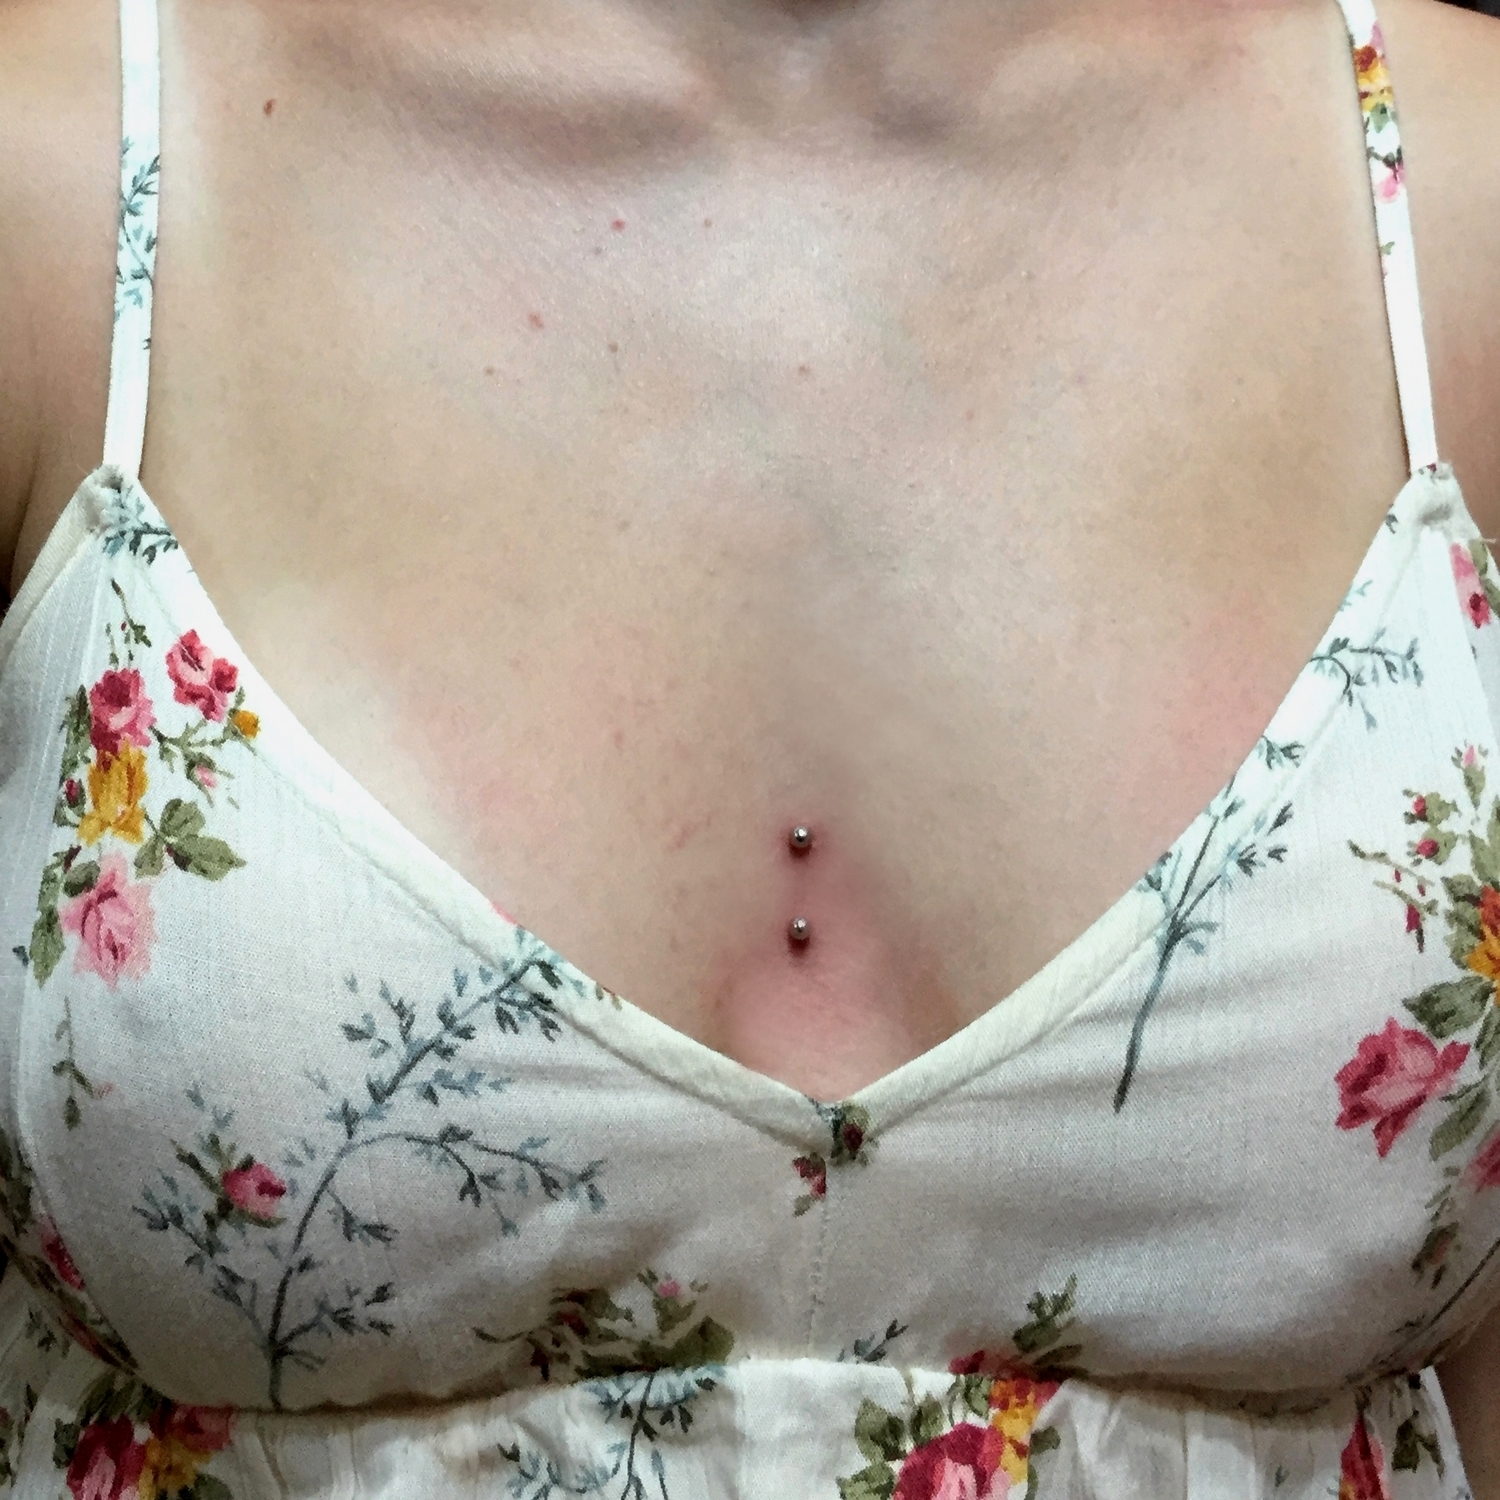 surface,breast,dermal,piercing 